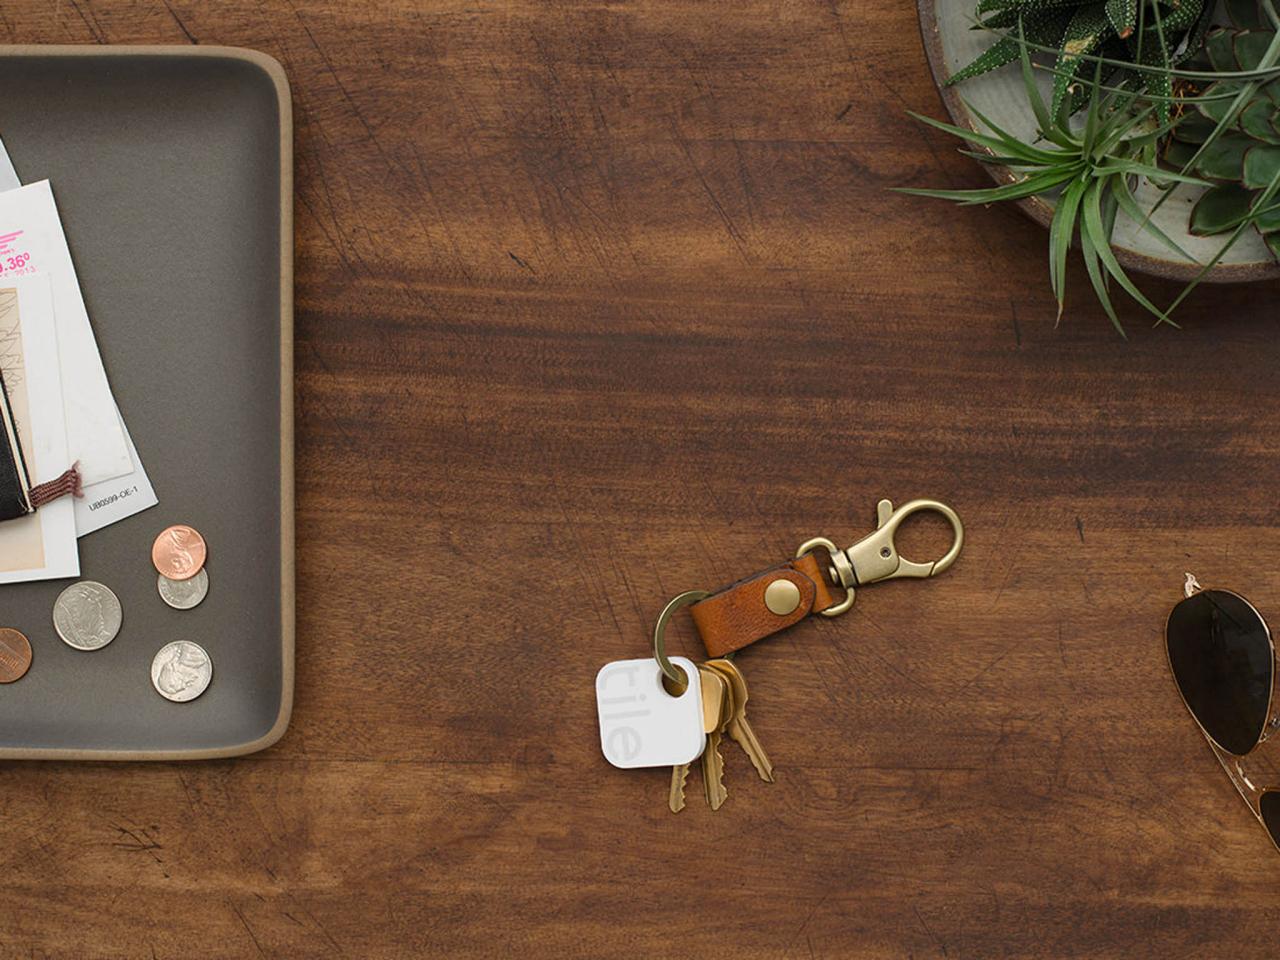 Chiếc tag thông minh hình vuông kích thước 3cm chất liệu siều bền, chống tấm nước, giúp cho những người đãng trí không còn lo mất đồ đạc nữa. Bạn chỉ cần móc chung nó với các vật dụng như chùm chìa khóa, bóp tiền, túi xách,… và yên tâm tìm kiếm bằng ứng dụng trên điện thoại đi động. Giá tham khảo: 1.400.000 đồng/ 4 tag.